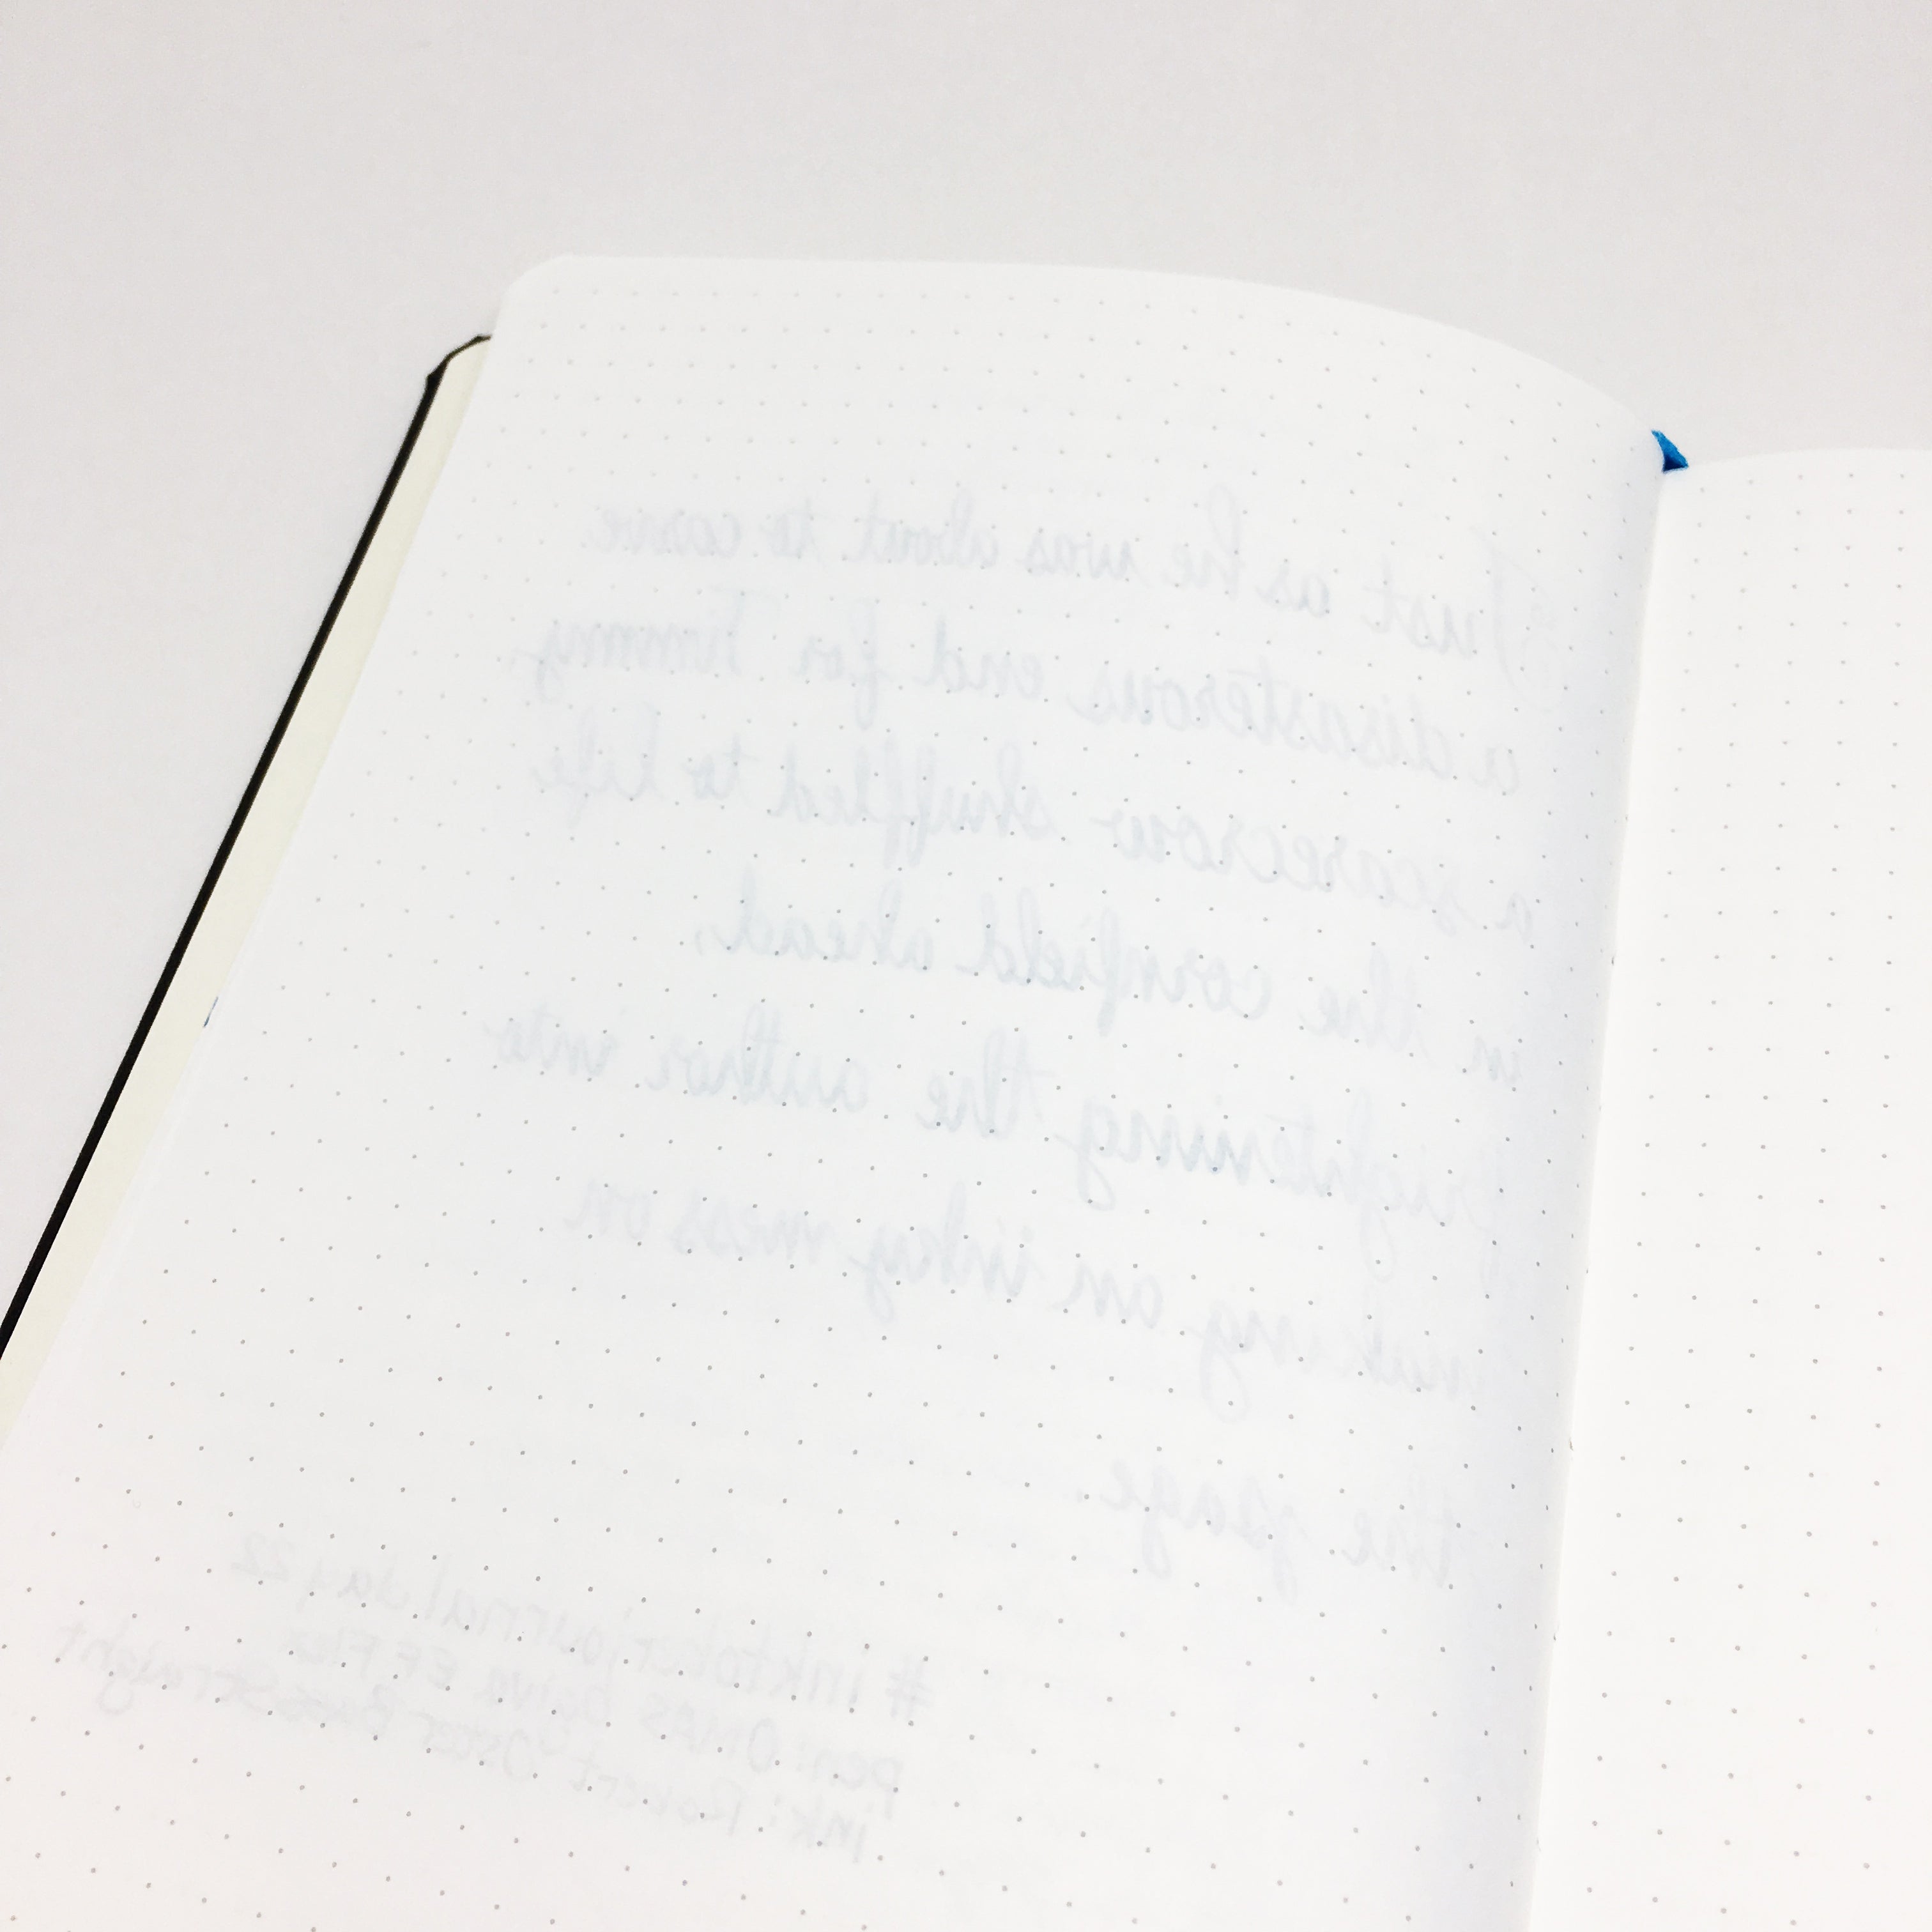 Endless Recorder Notebook A5 Deep Ocean - Dotted